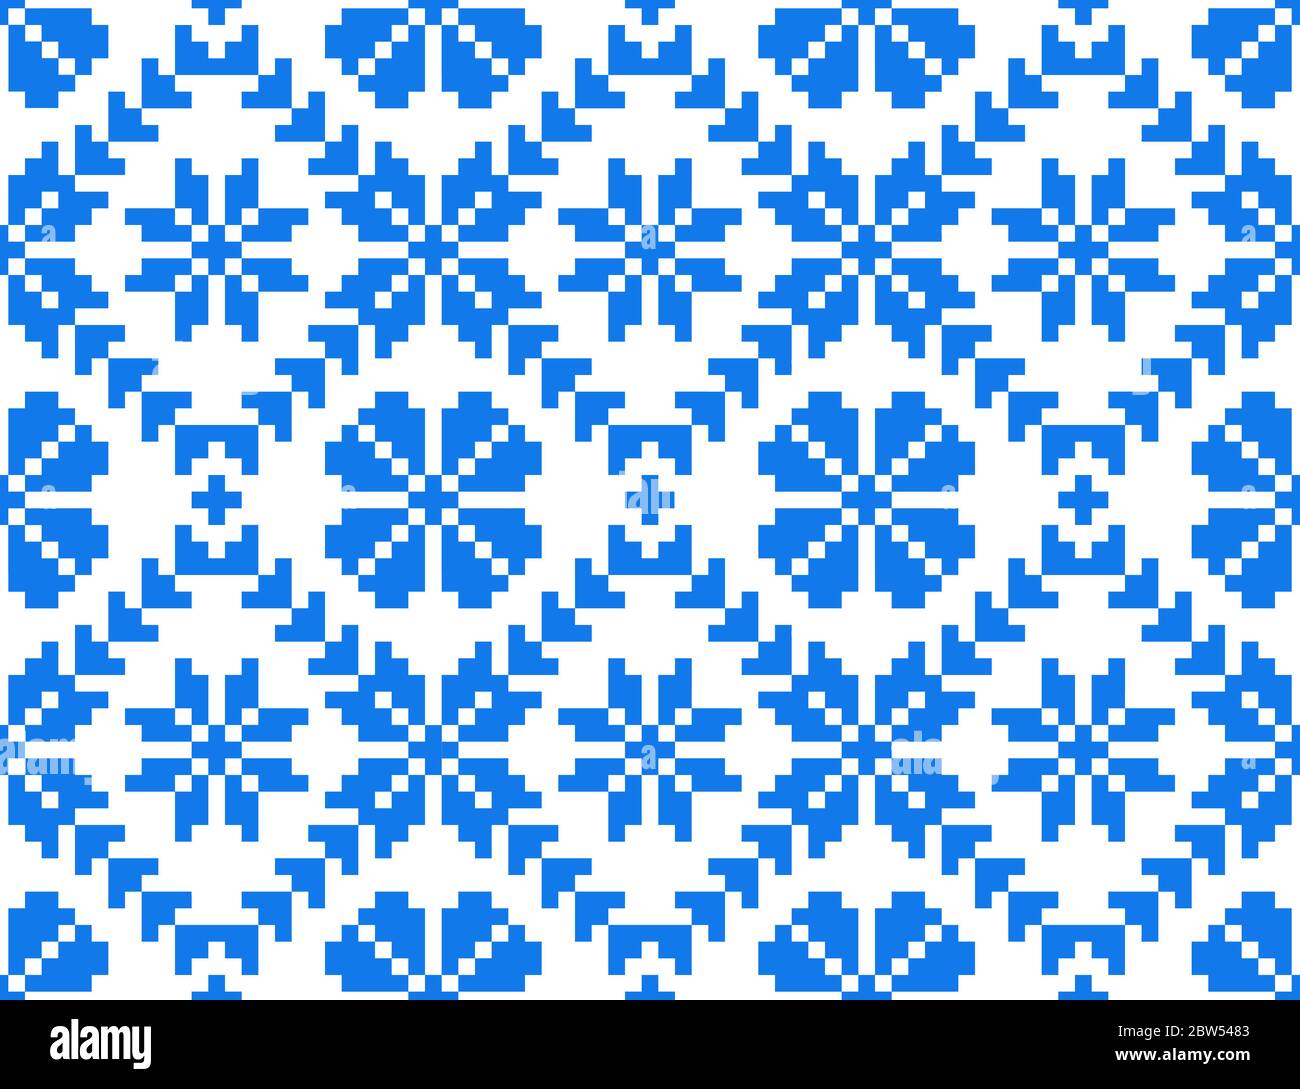 Folk Art nahtlose Wiederholung Muster-Design mit blauen floralen Elementen auf weißem Hintergrund. Osteuropäische traditionelle Stickerei Muster. Siebenbürgen Stock Vektor